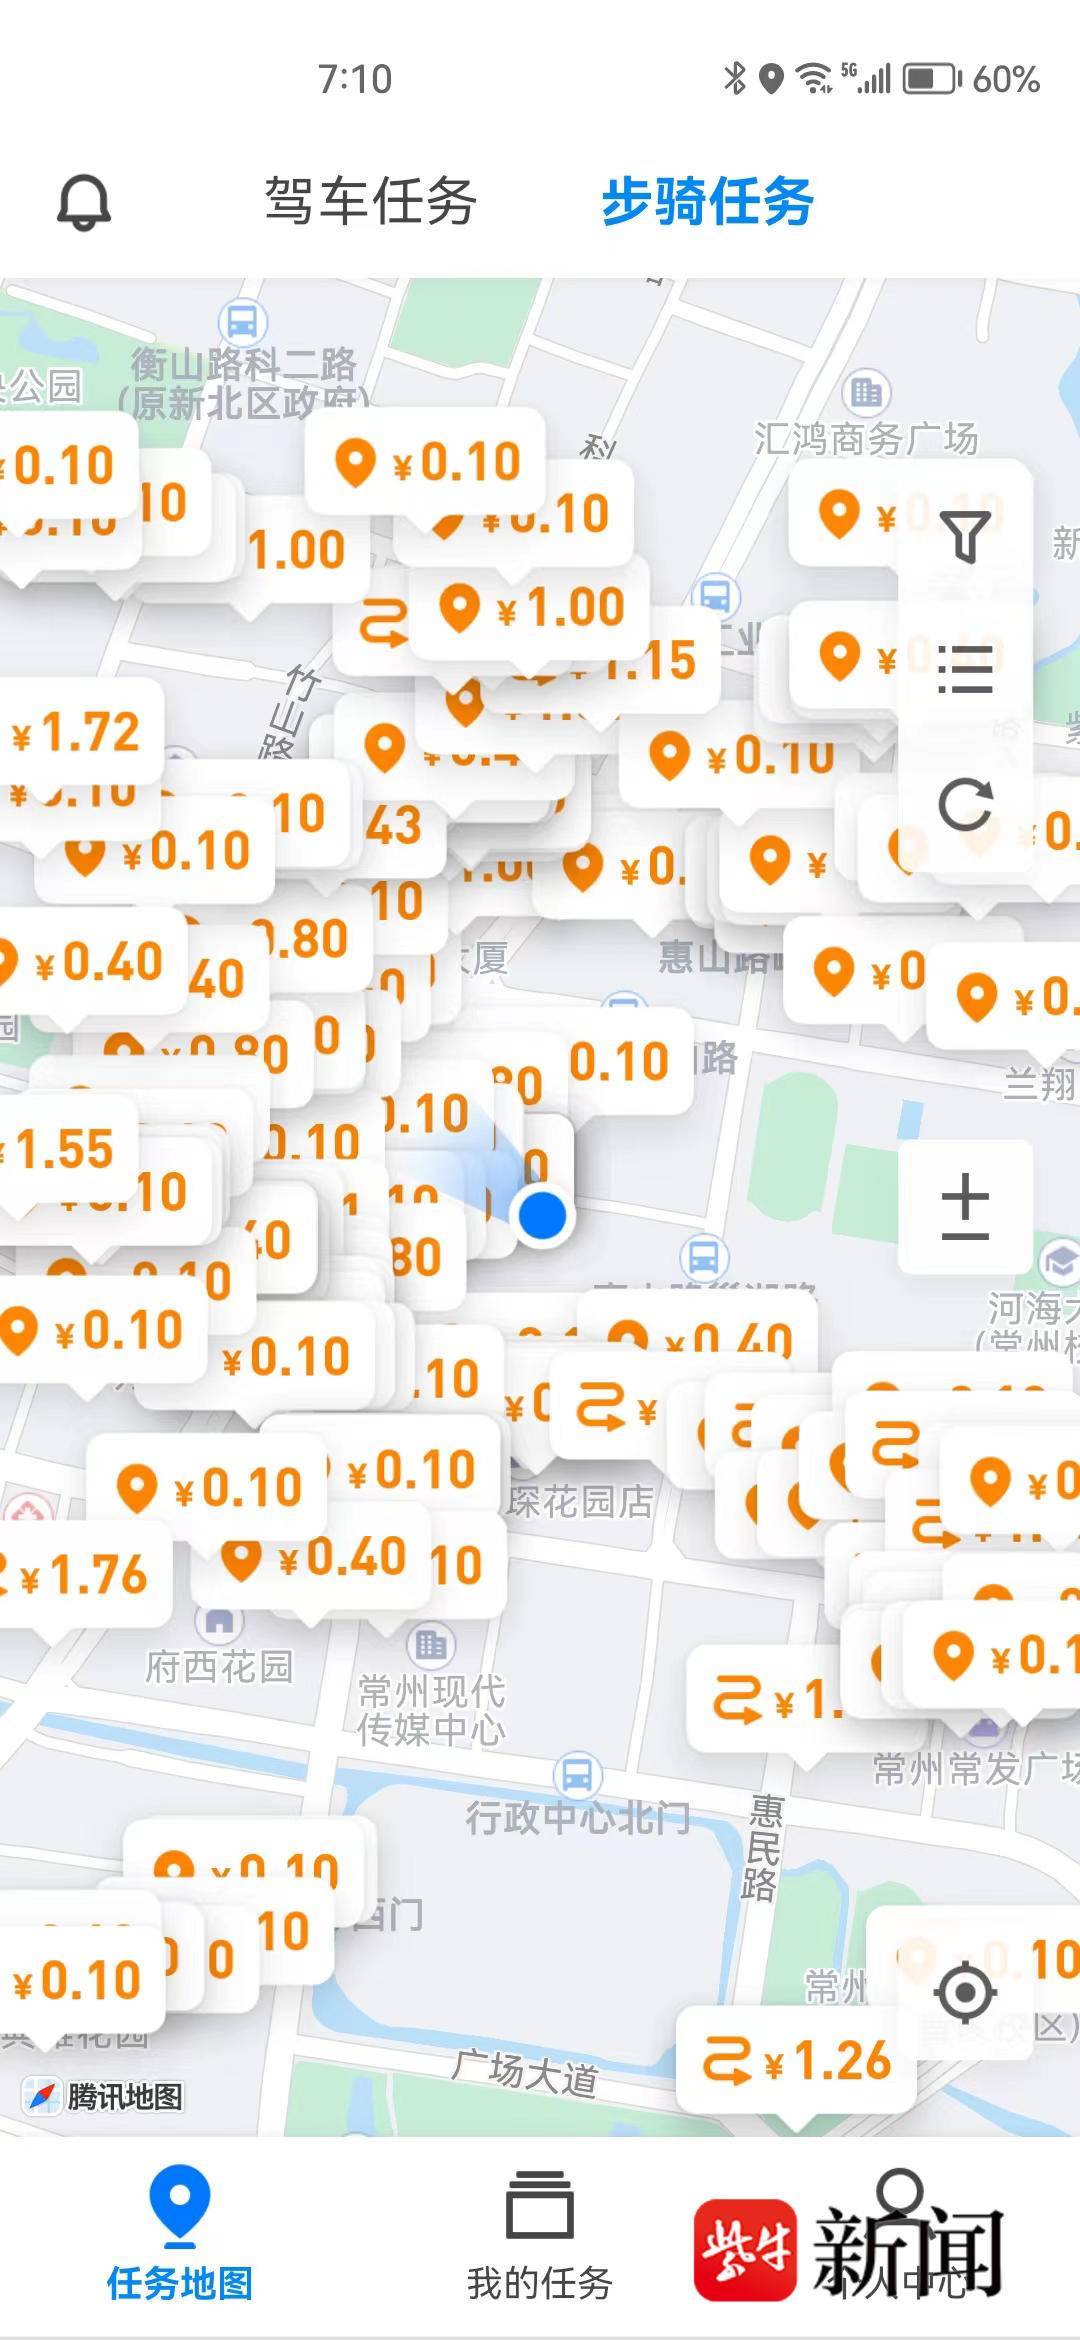 地图采集软件苹果版:地图标注任务App成白领解压工具逛街时顺手拍拍门头，也能赚一杯奶茶钱